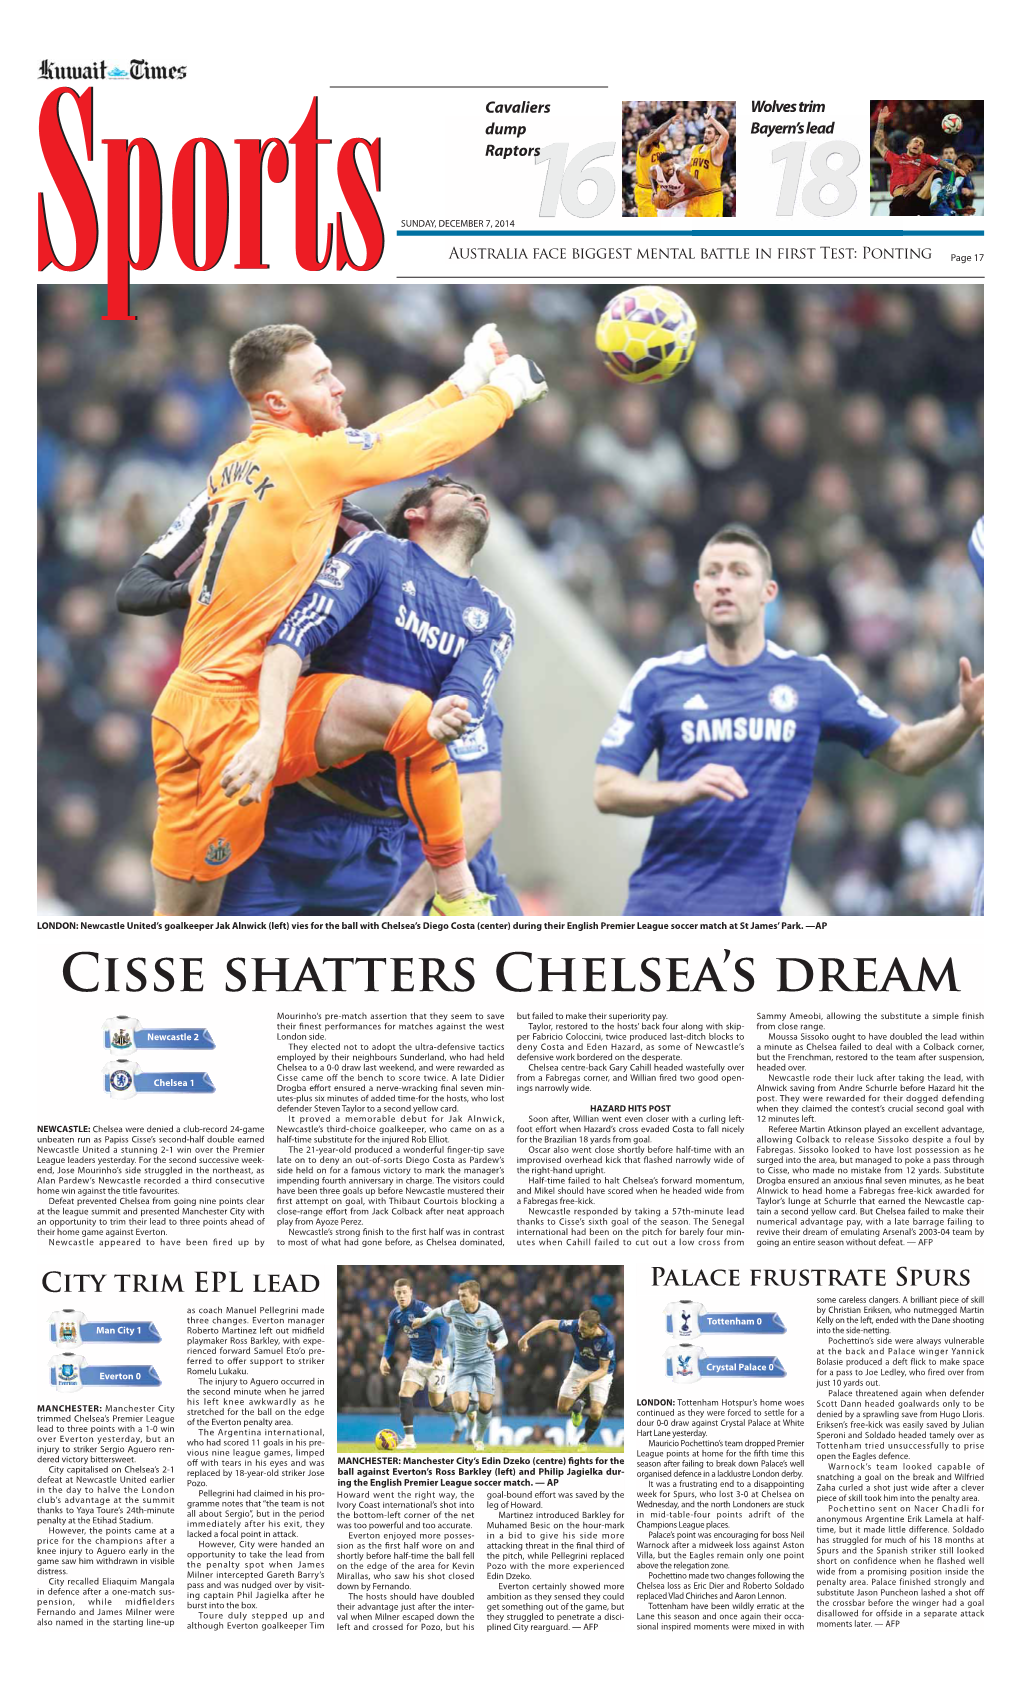 Cisse Shatters Chelsea's Dream